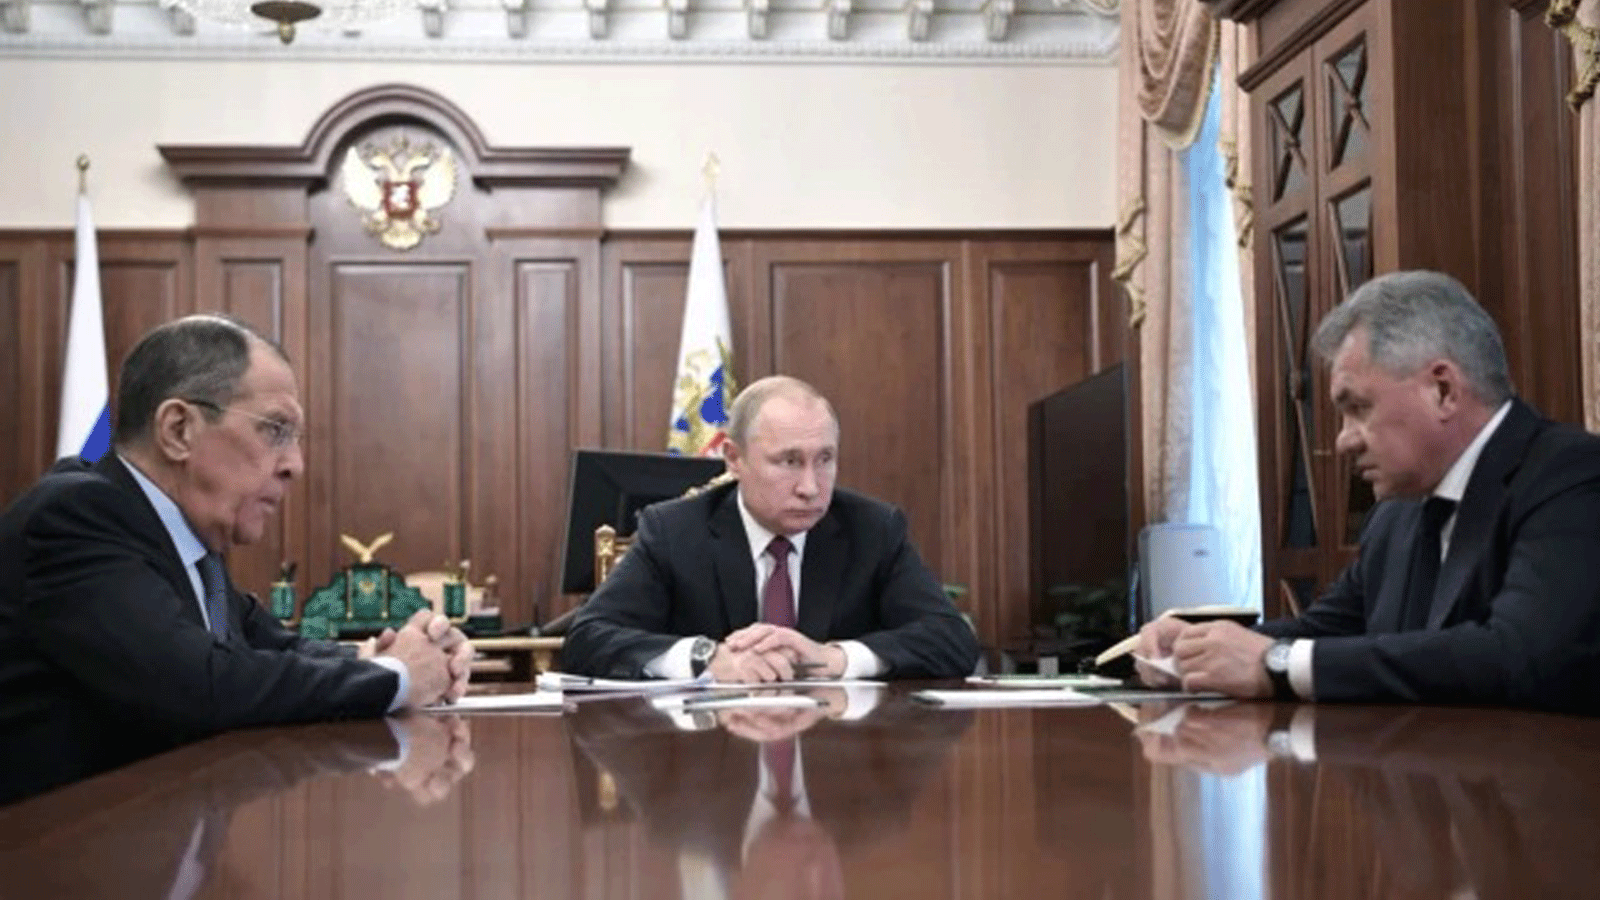 الرئيس الروسي فلاديمير بوتين (في الوسط) في موسكو مع وزير الخارجية سيرغي لافروف (إلى اليسار) ووزير الدفاع سيرغي شويغو.